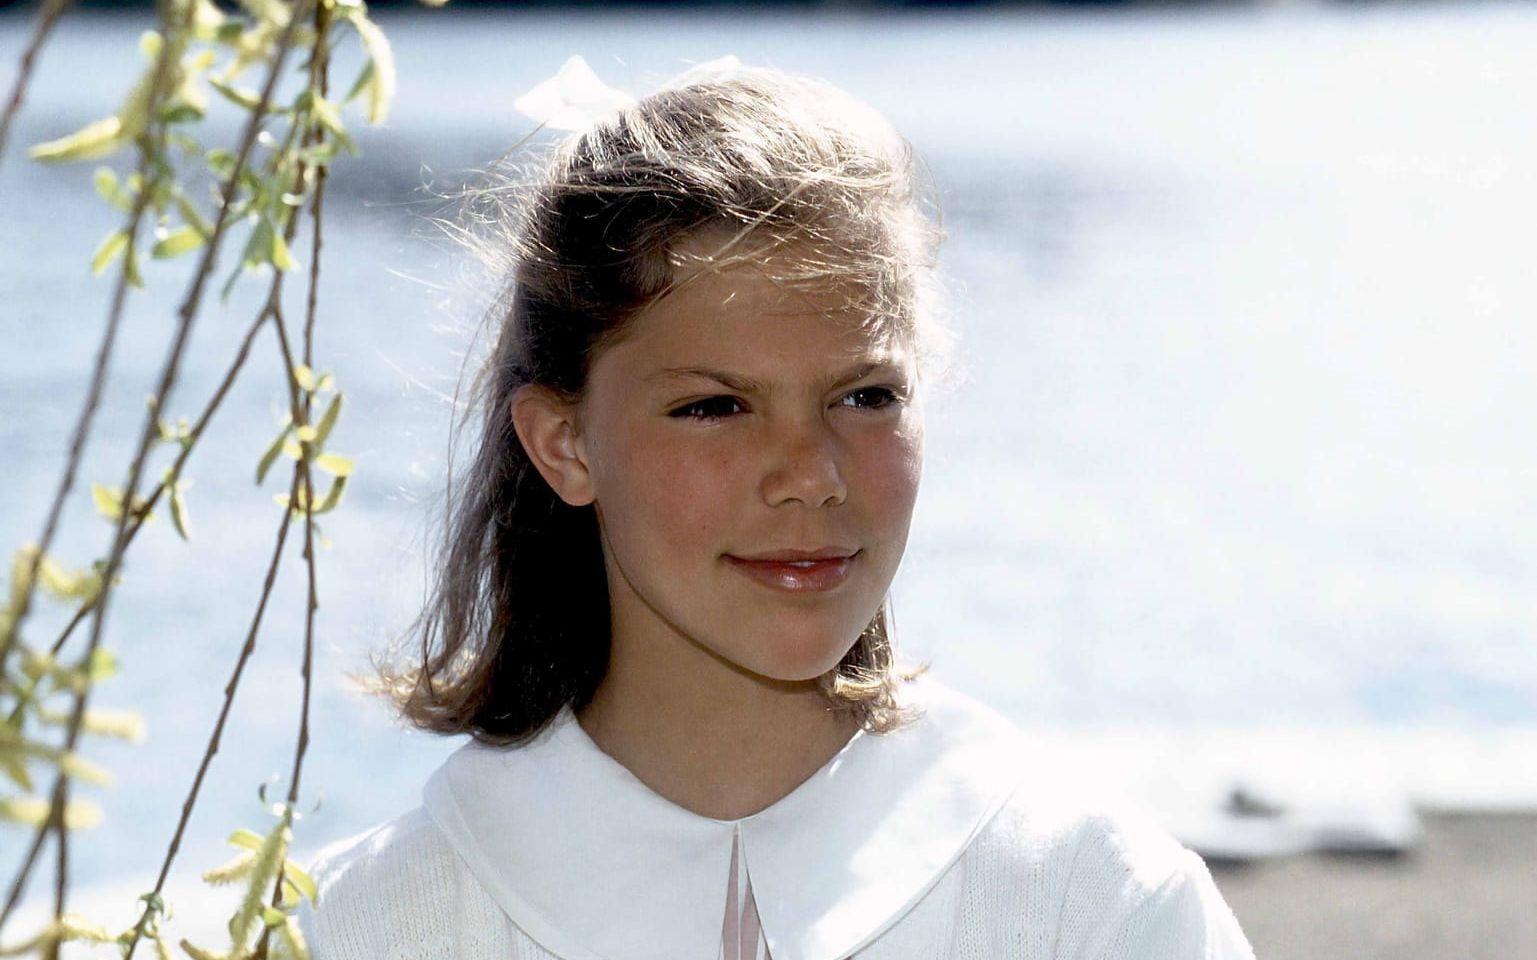 13 årig kronprinsessa poserar i öländsk idyll 1990. Foto: Janerik Henriksson / SCANPIX / TT